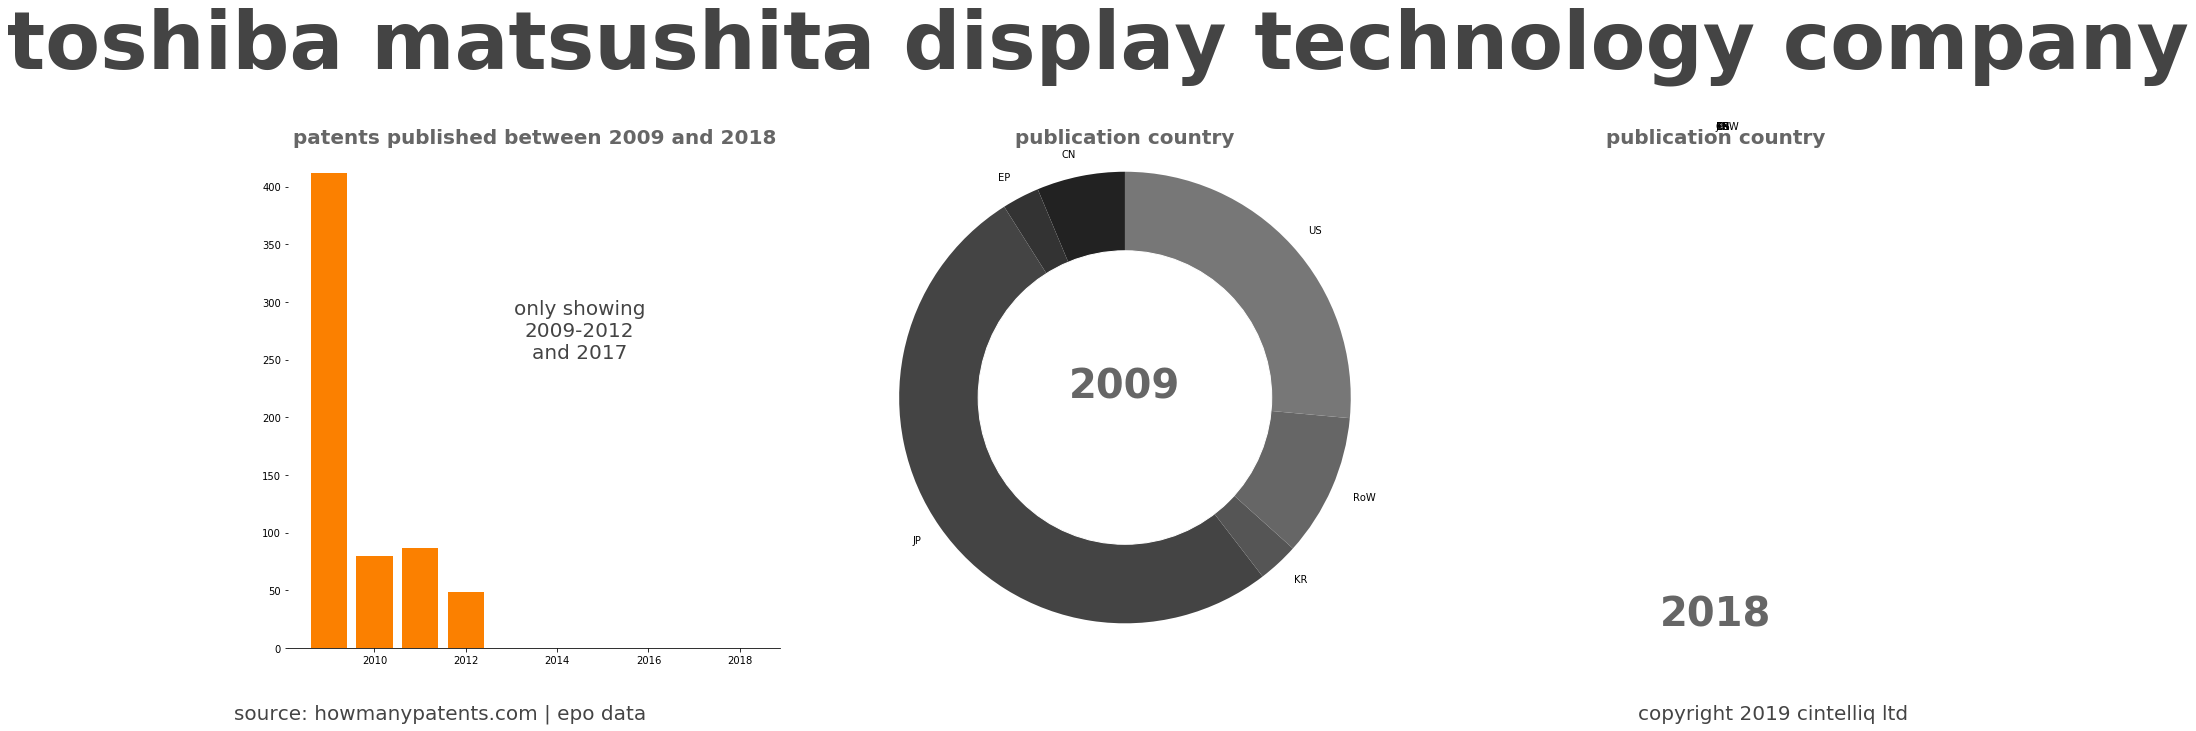 summary of patents for Toshiba Matsushita Display Technology Company